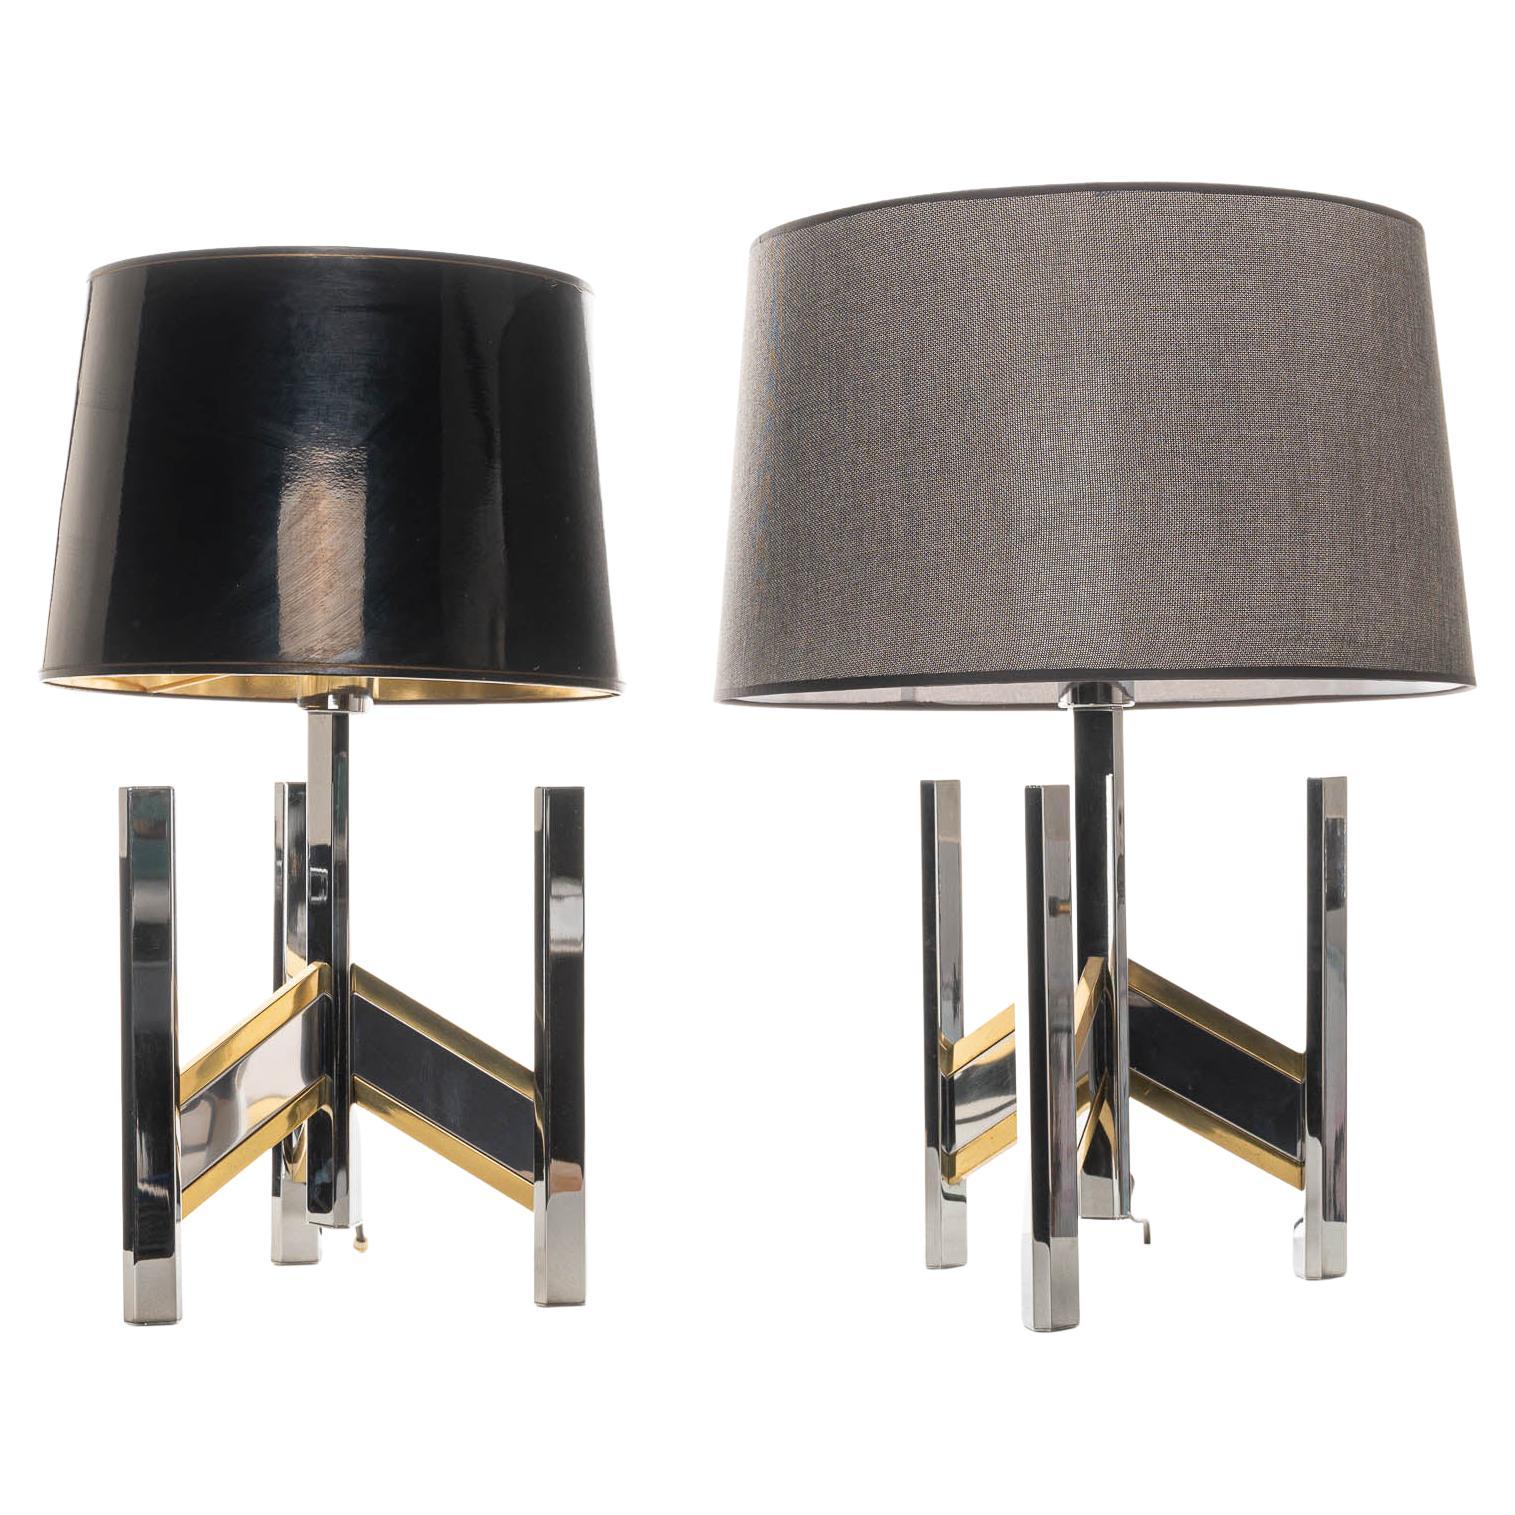 1970’s Brass & Chrome Table Lamps, Classic Concorde Design by Gaetano Sciolari For Sale